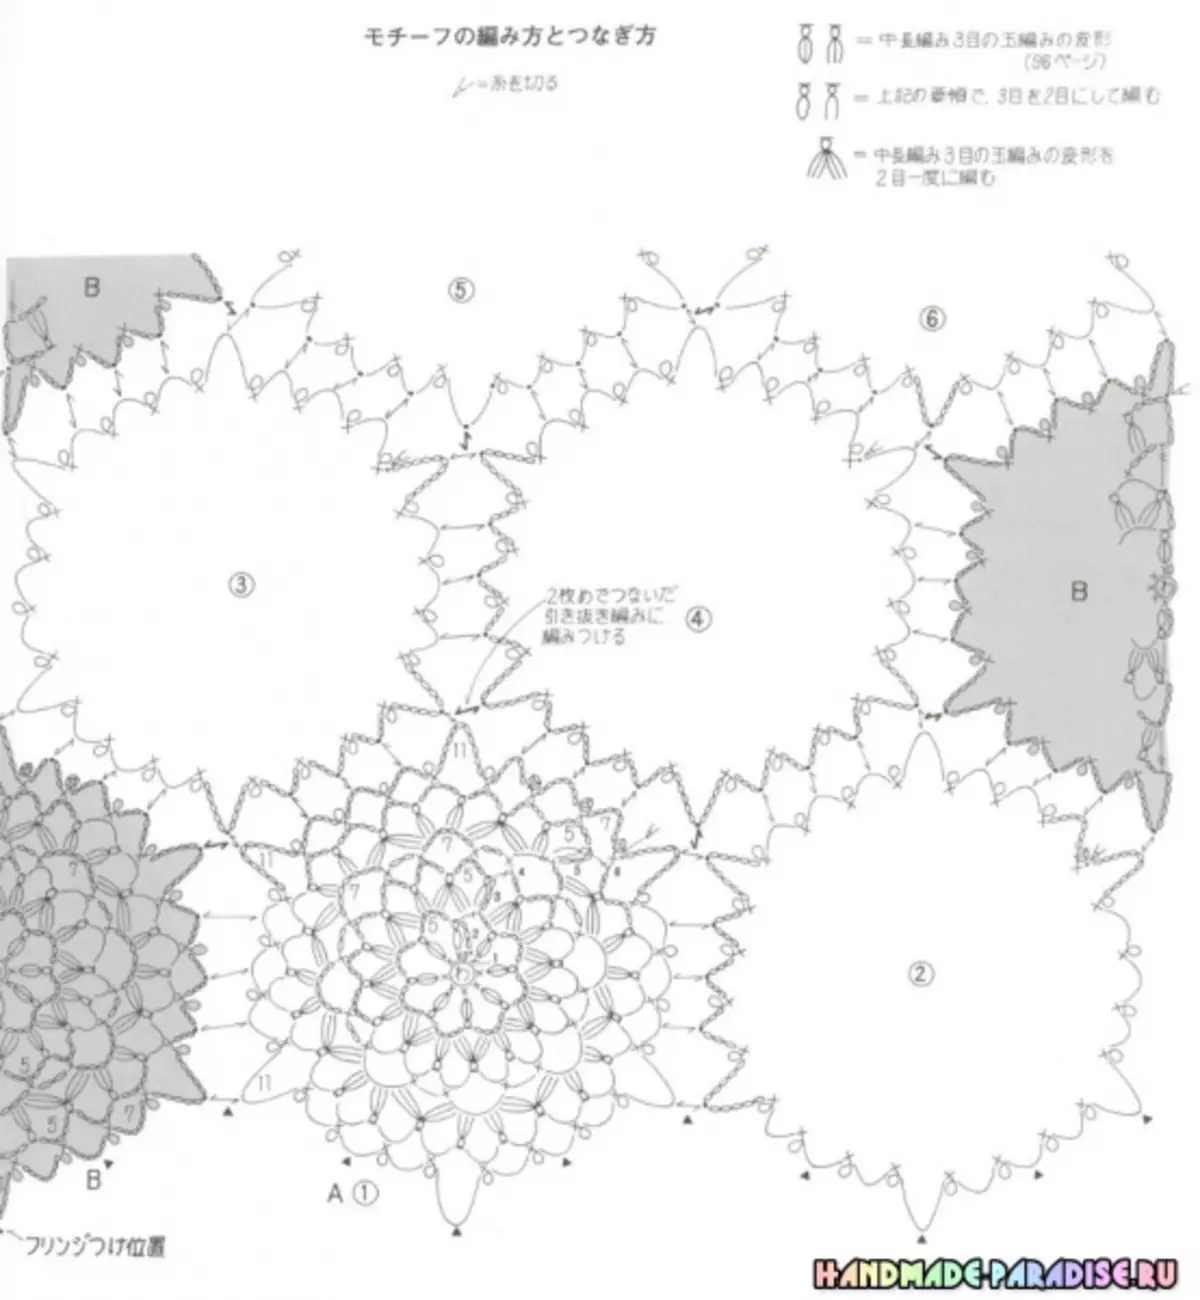 Štýlová pletacia háčkovanie. Japonský časopis so systémami